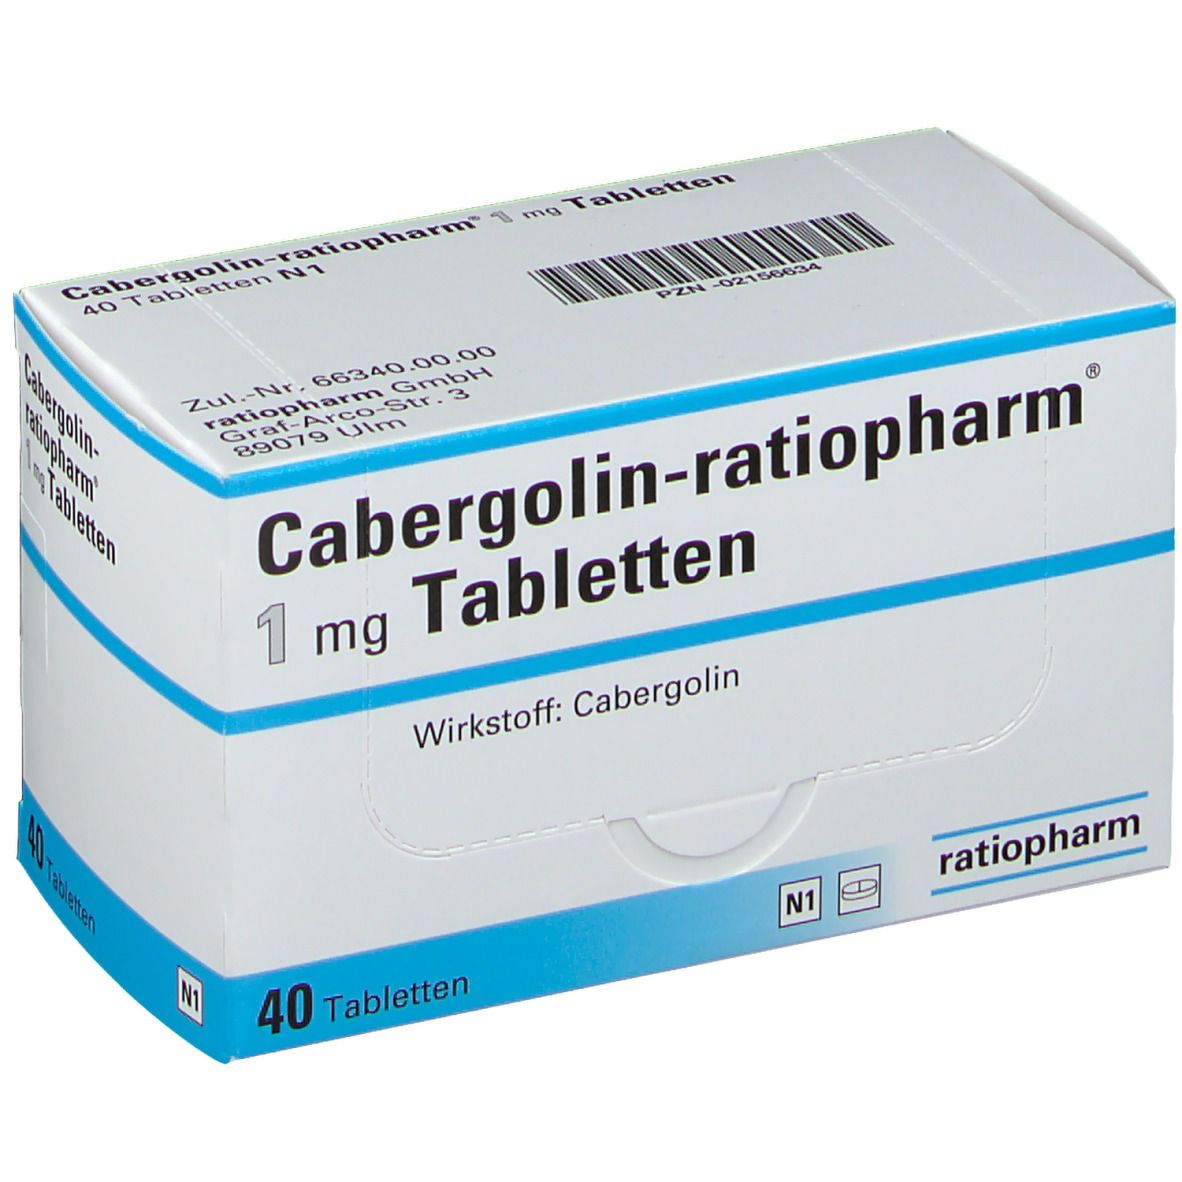 cabergolin 0 5 mg: Eine unglaublich einfache Methode, die für alle funktioniert